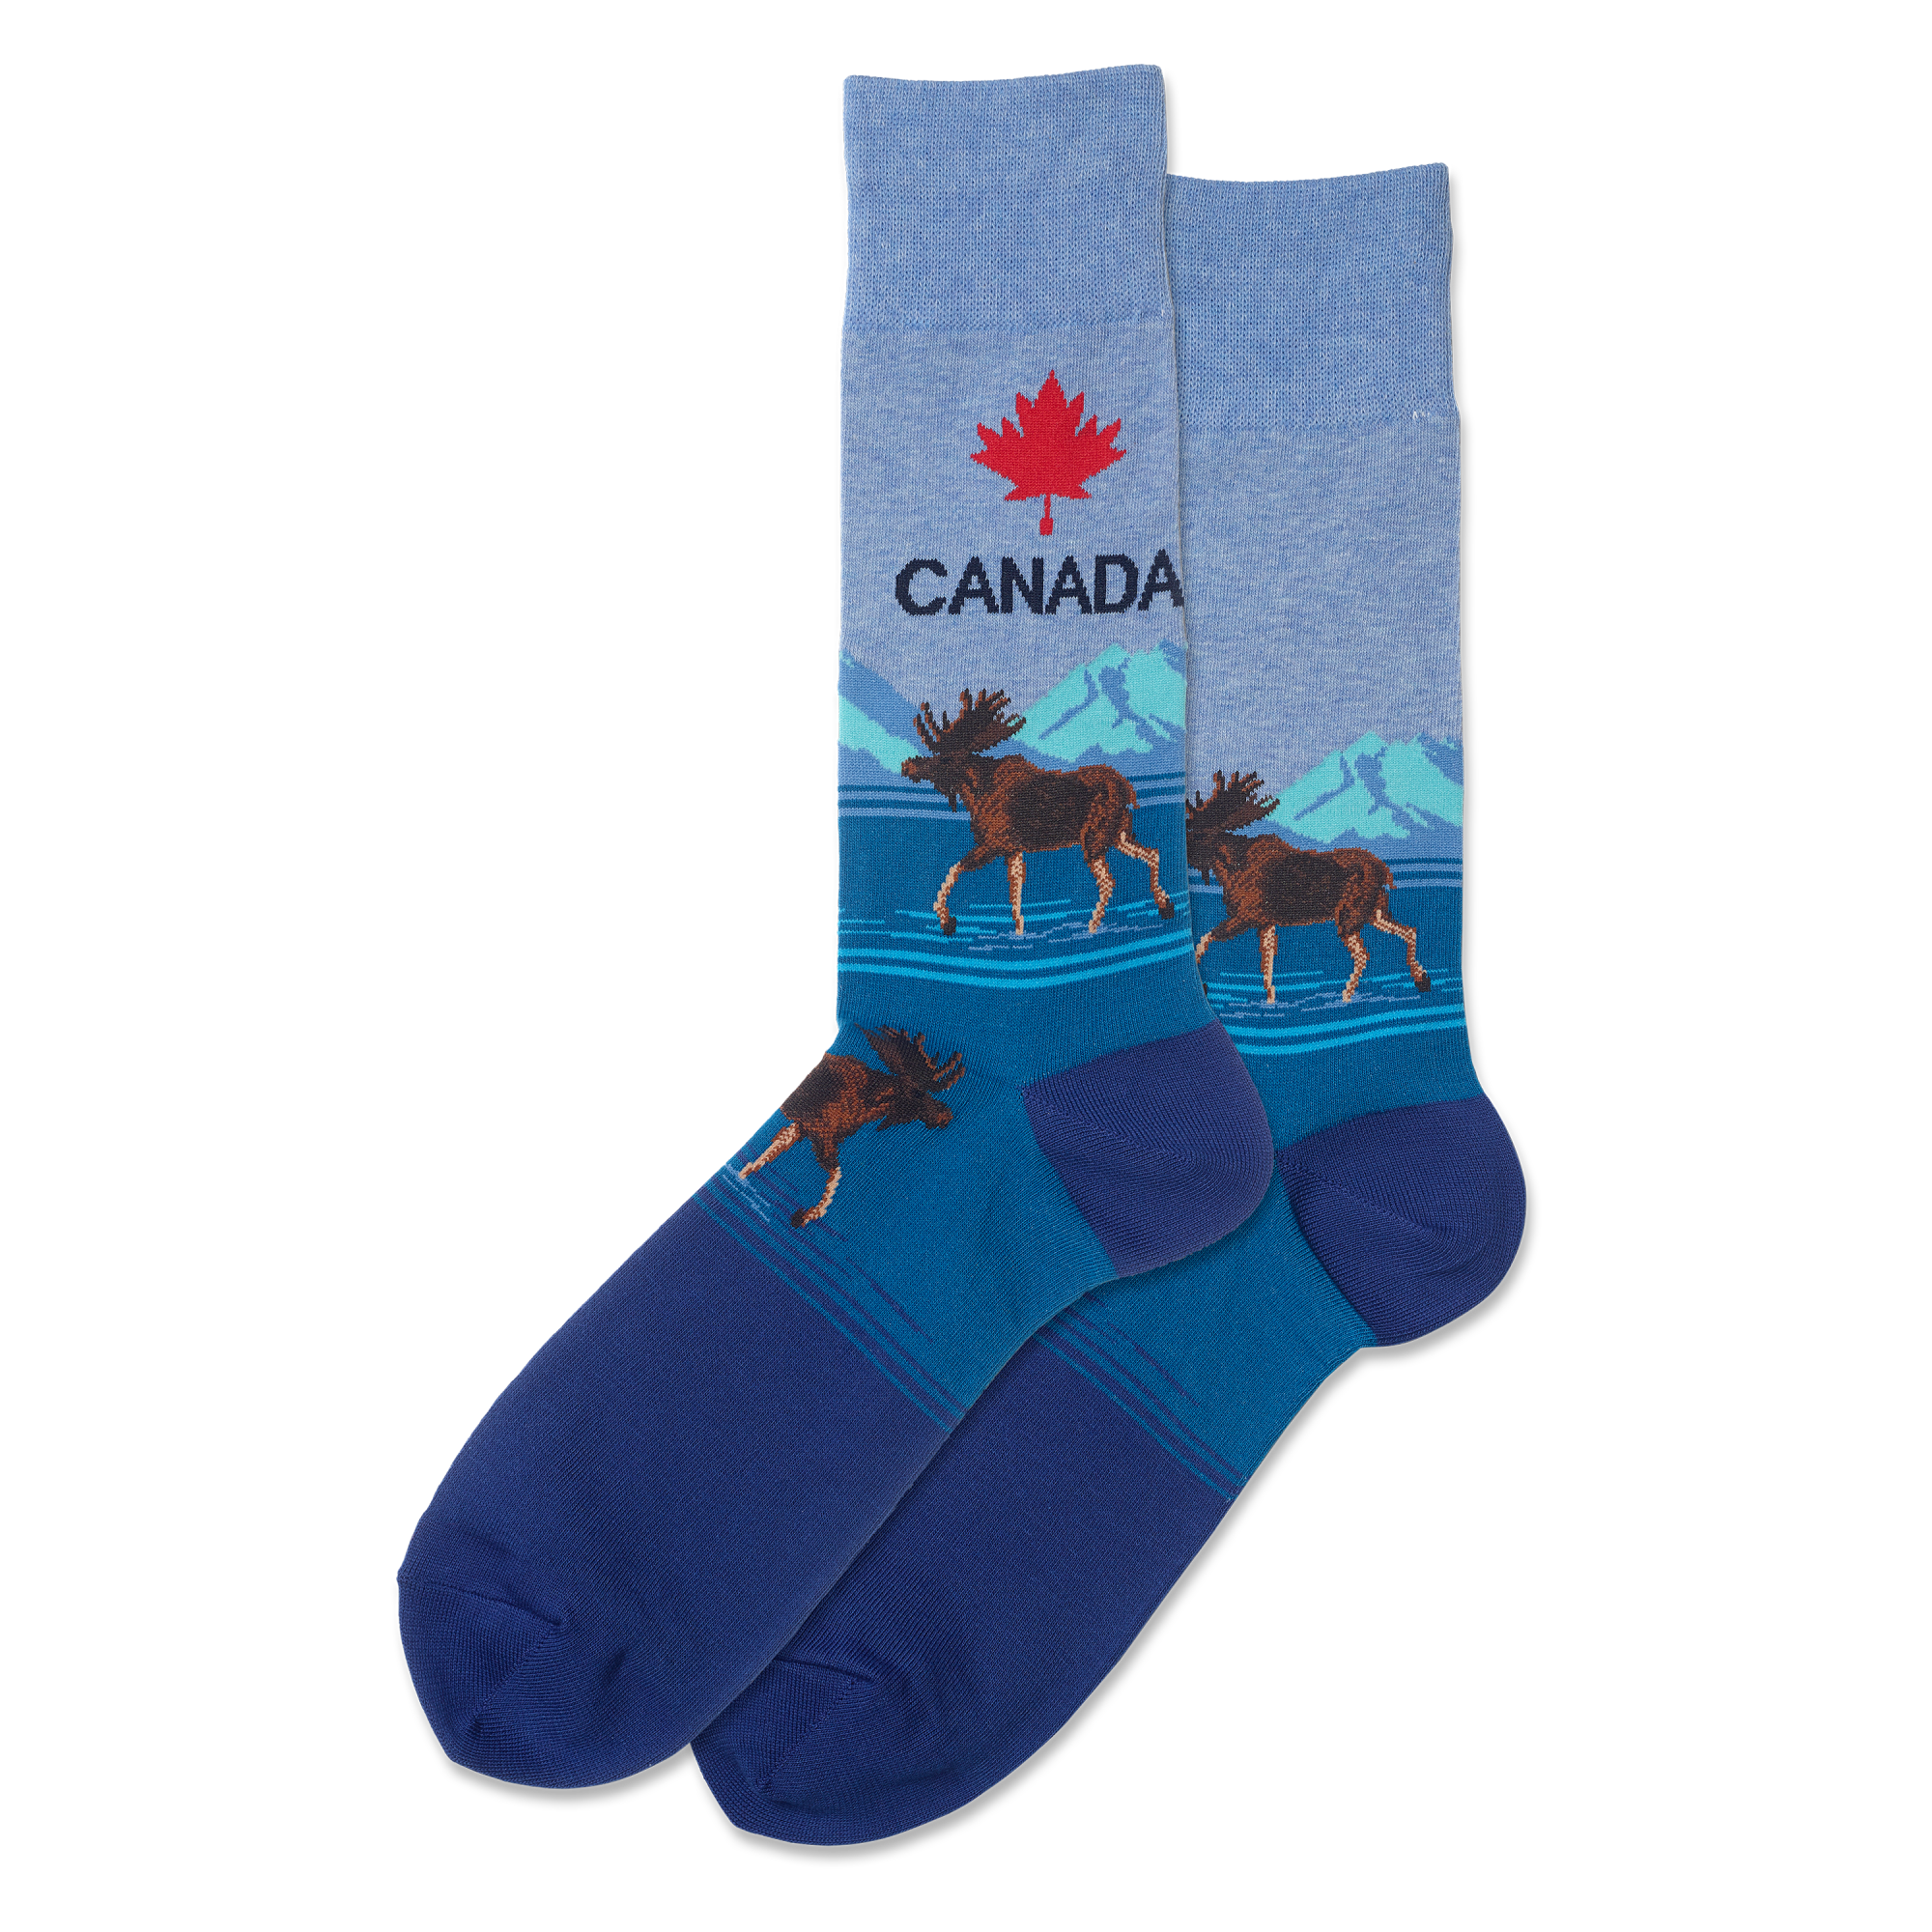 Hotsox Men's Canada Crew Socks